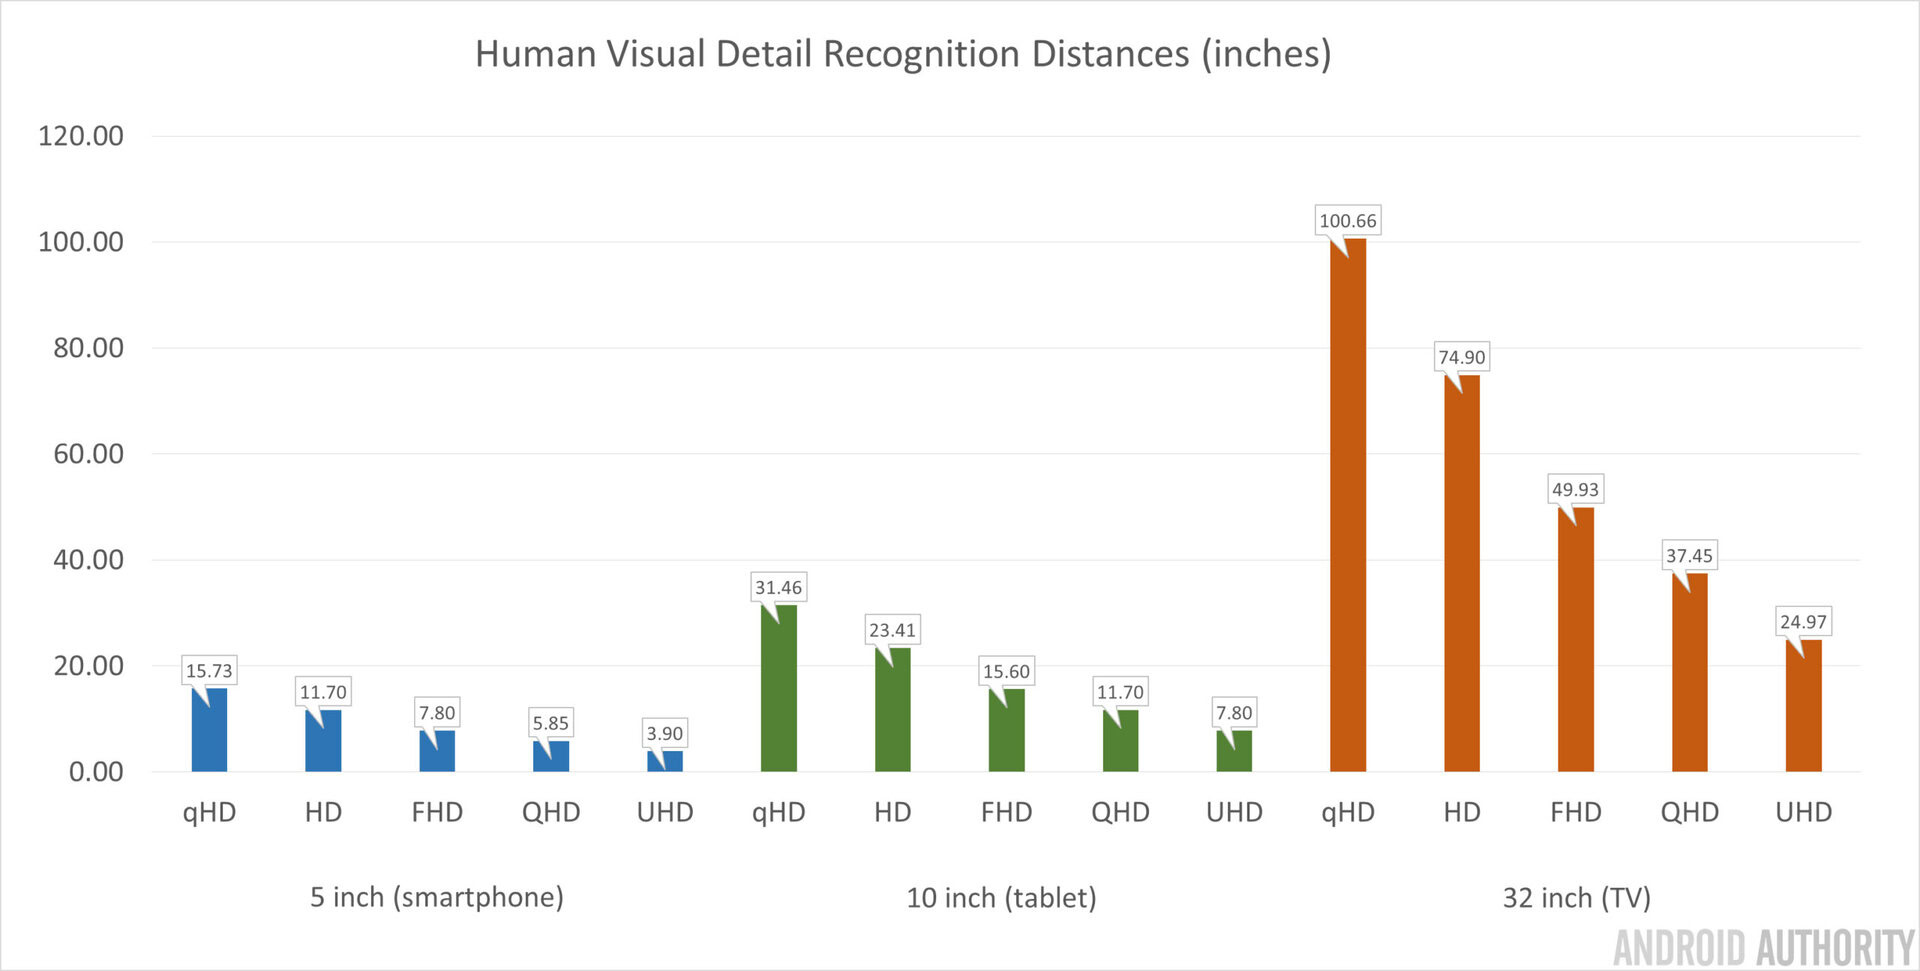 Human Visual Detail Recognition Distances